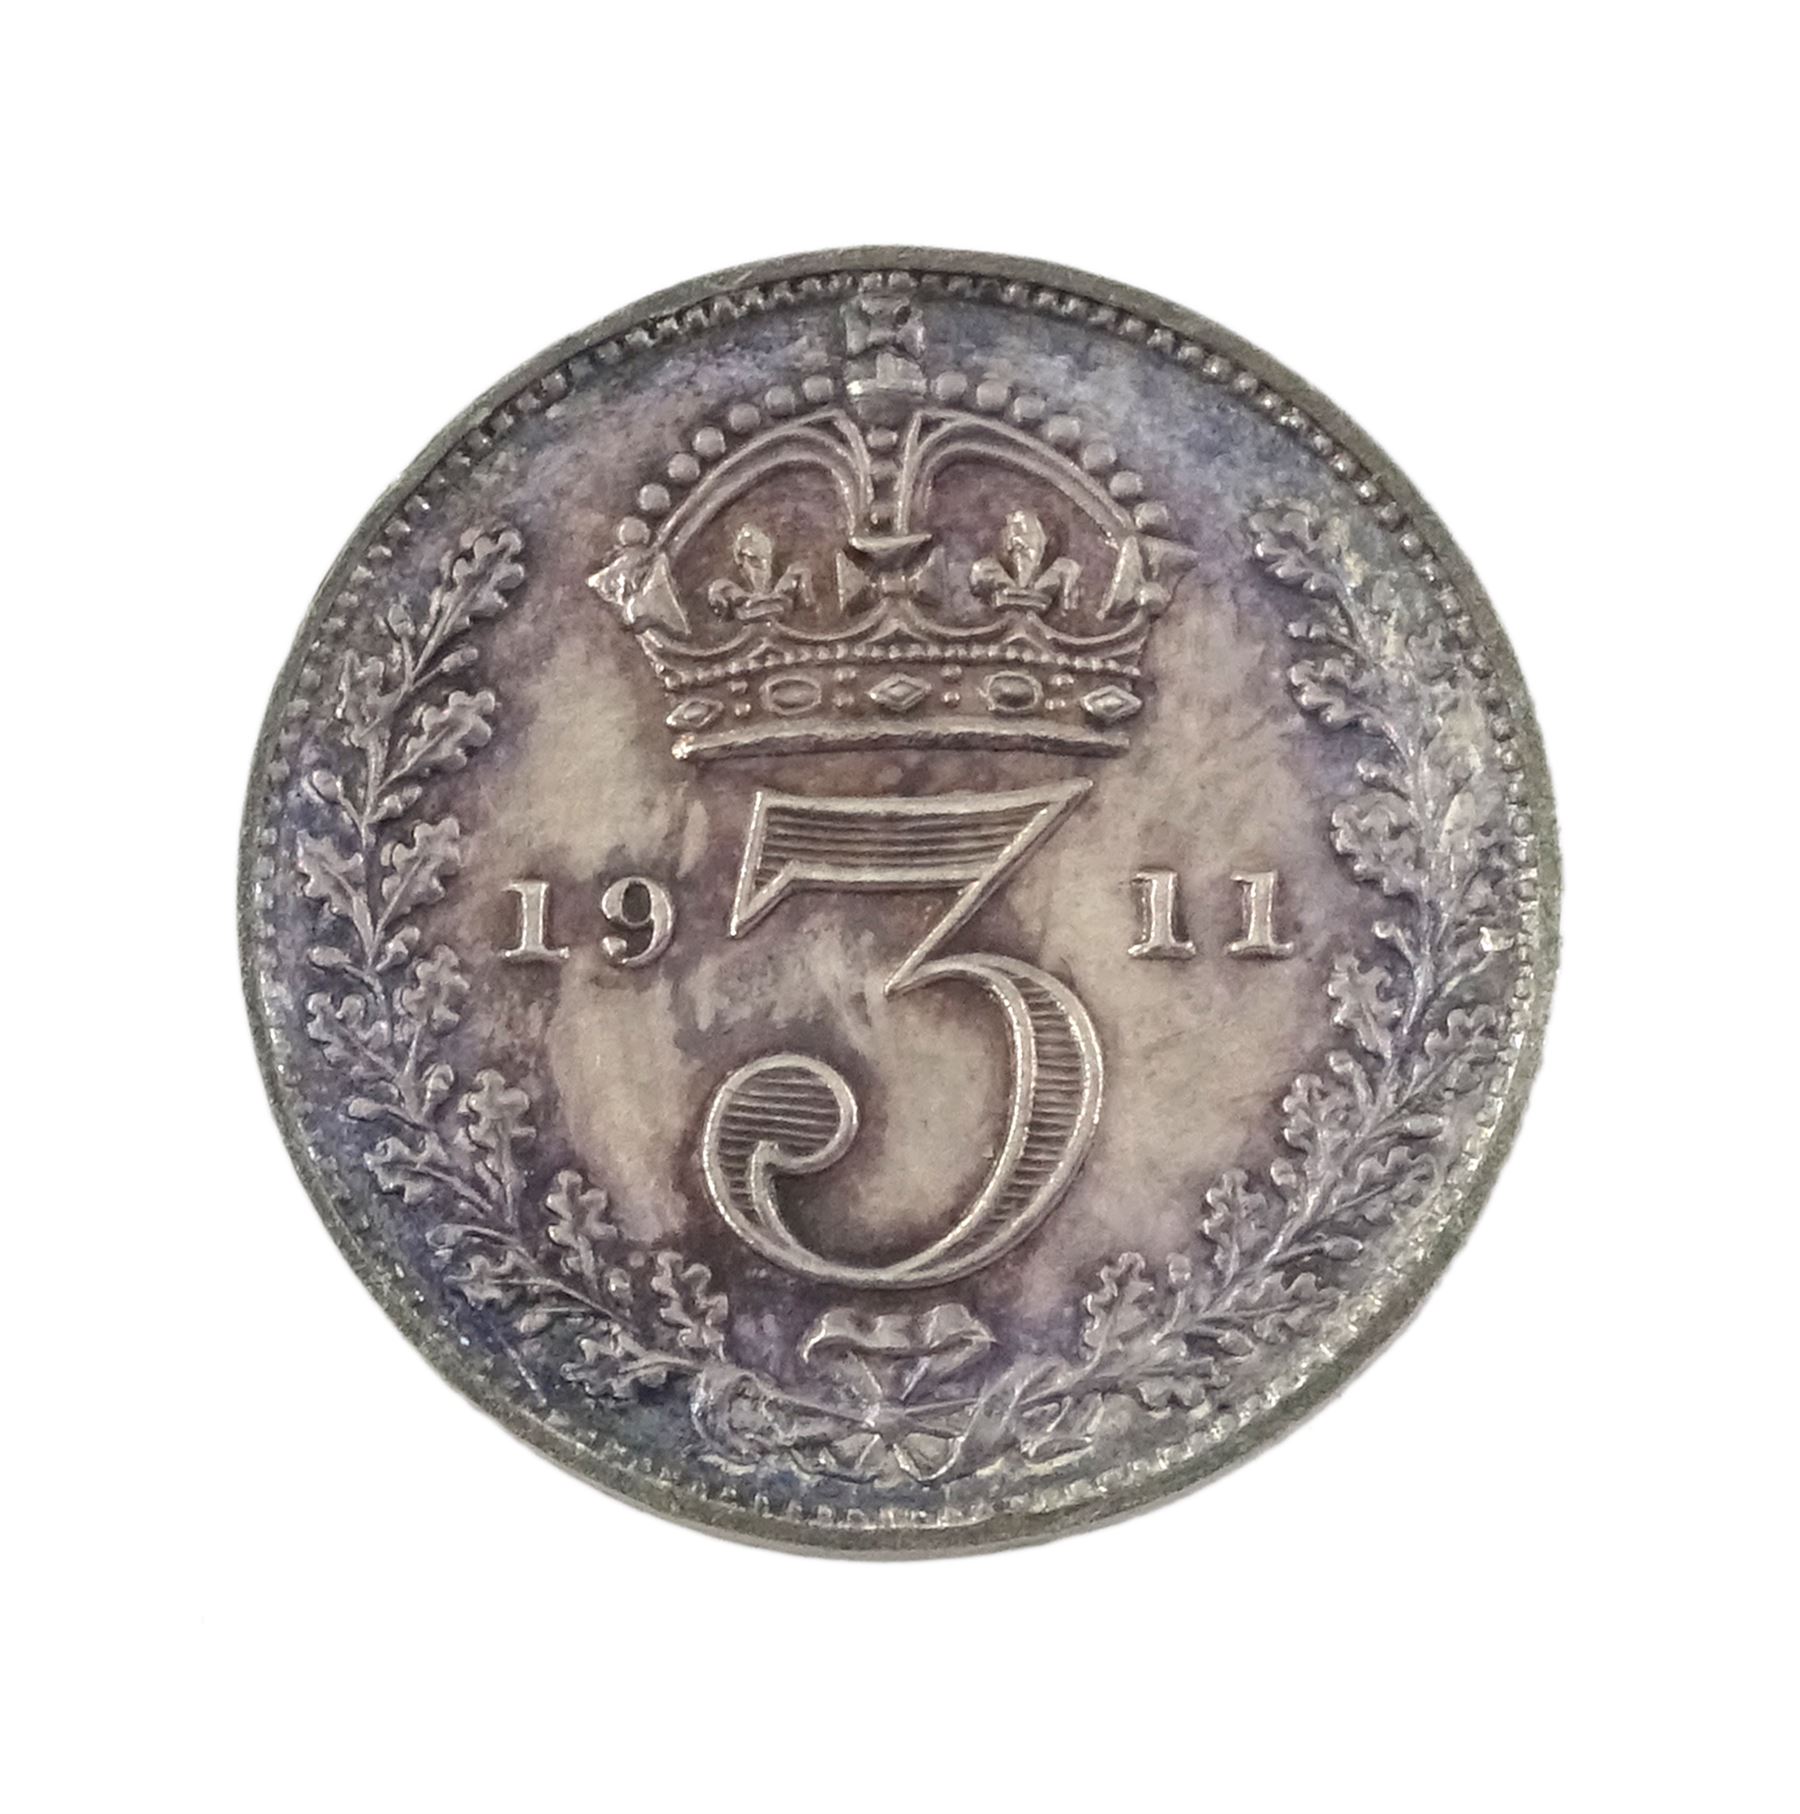 King George V 1911 proof short coin set - Image 19 of 24